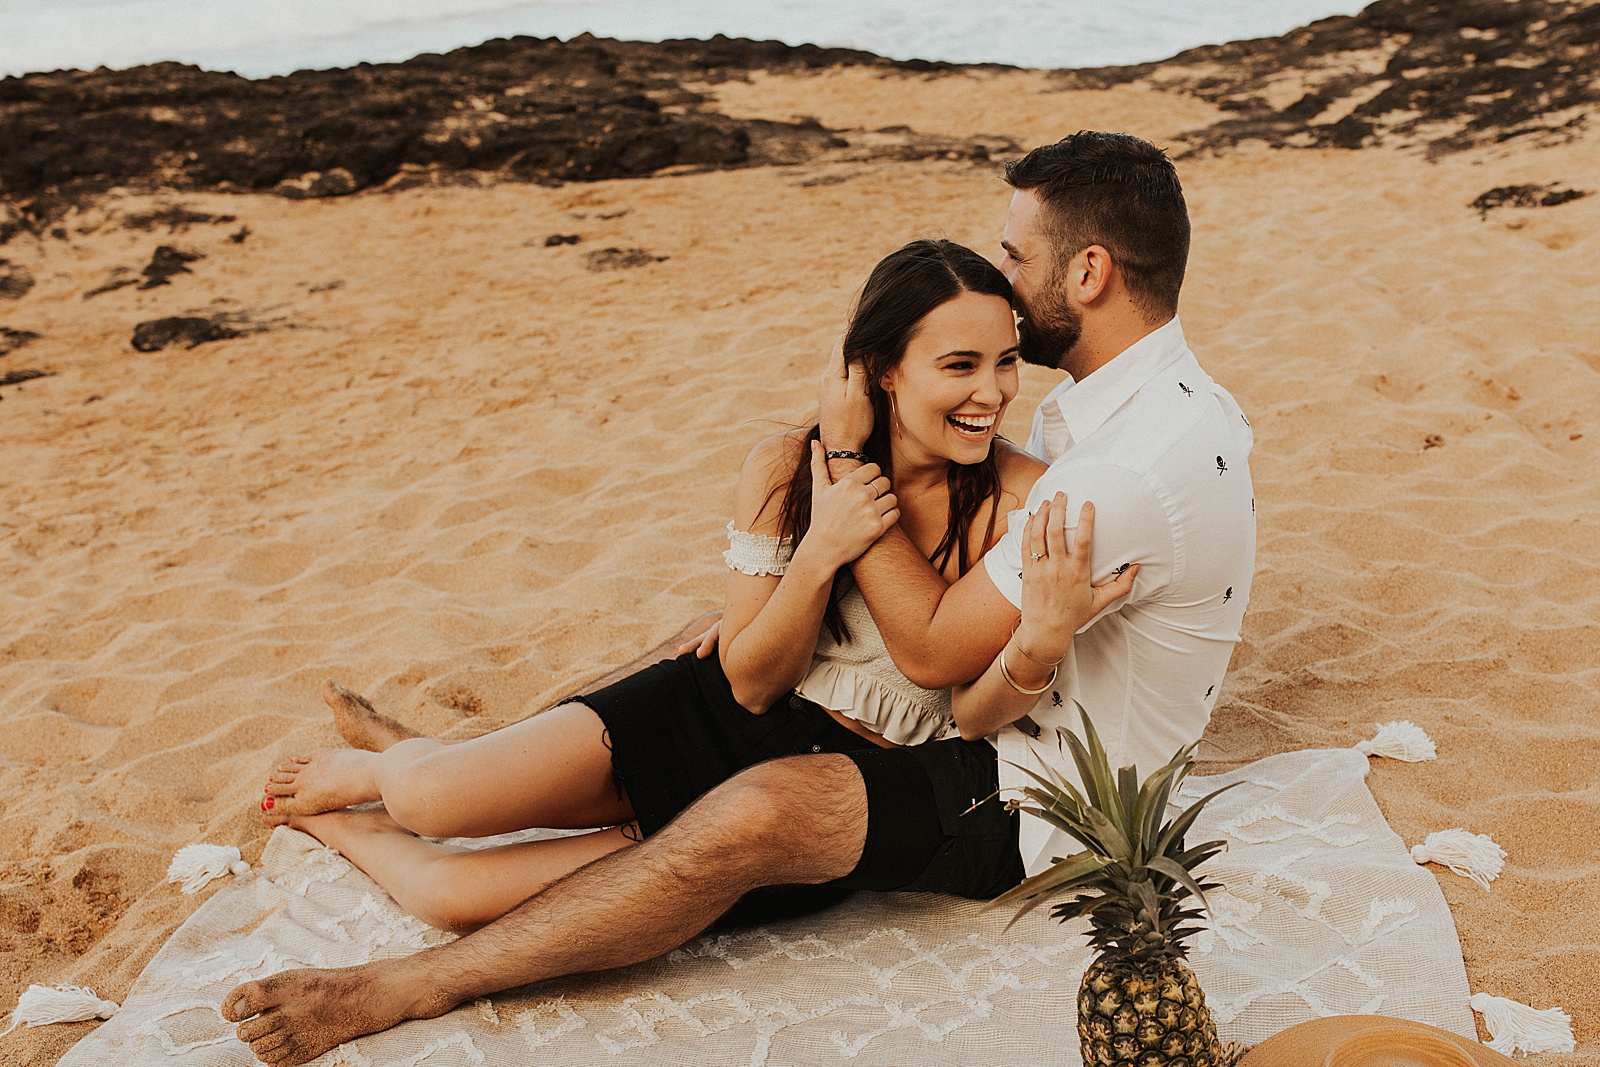 Fun and playful engagement photos at Secret Beach in Kauai, Hawaii. 